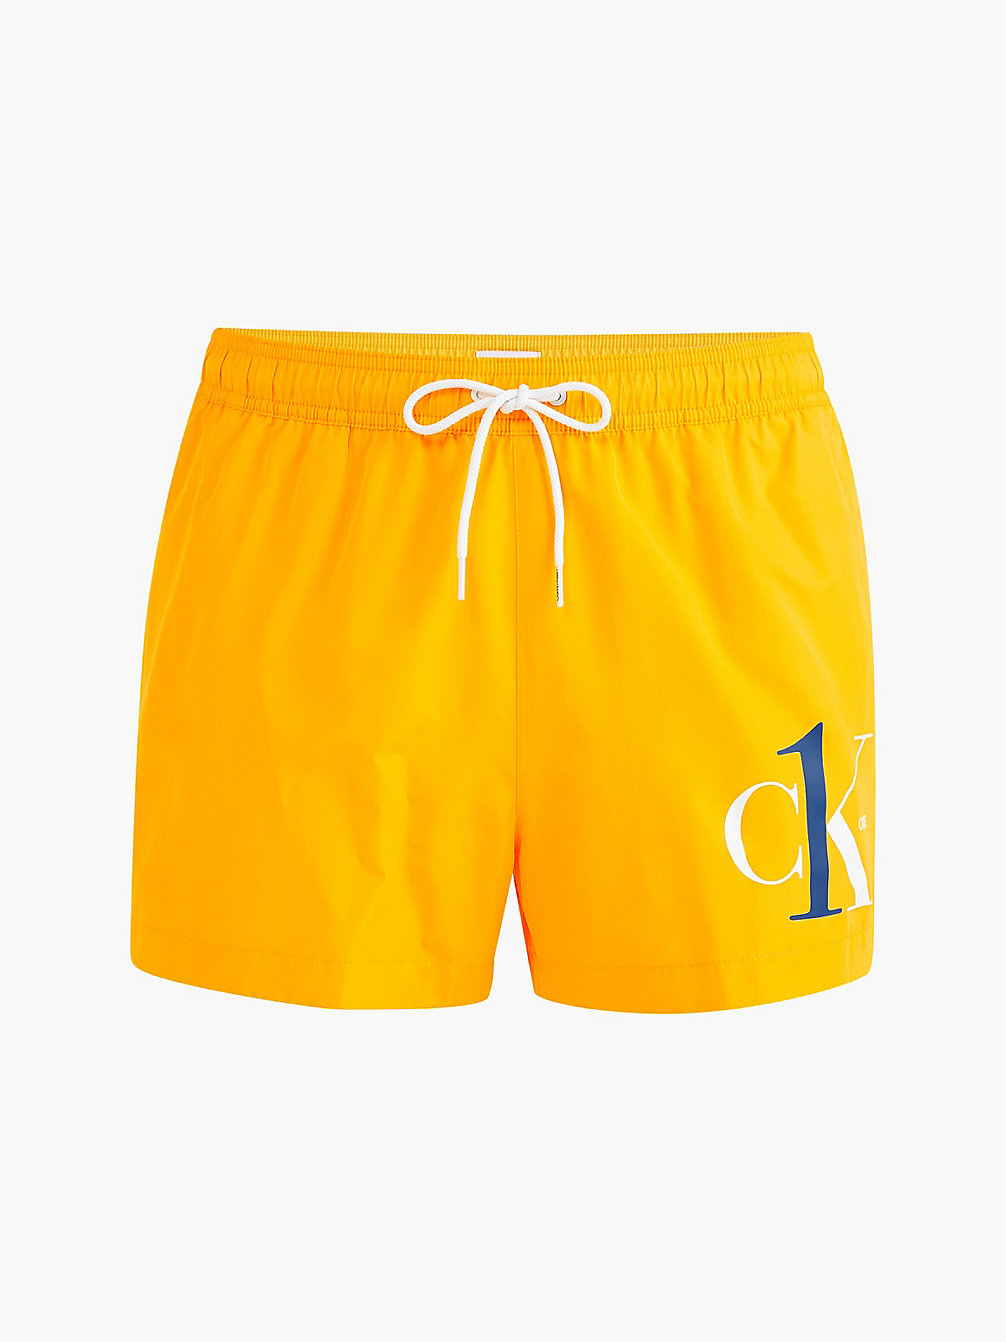 WARM YELLOW Short Drawstring Swim Shorts - CK One undefined men Calvin Klein